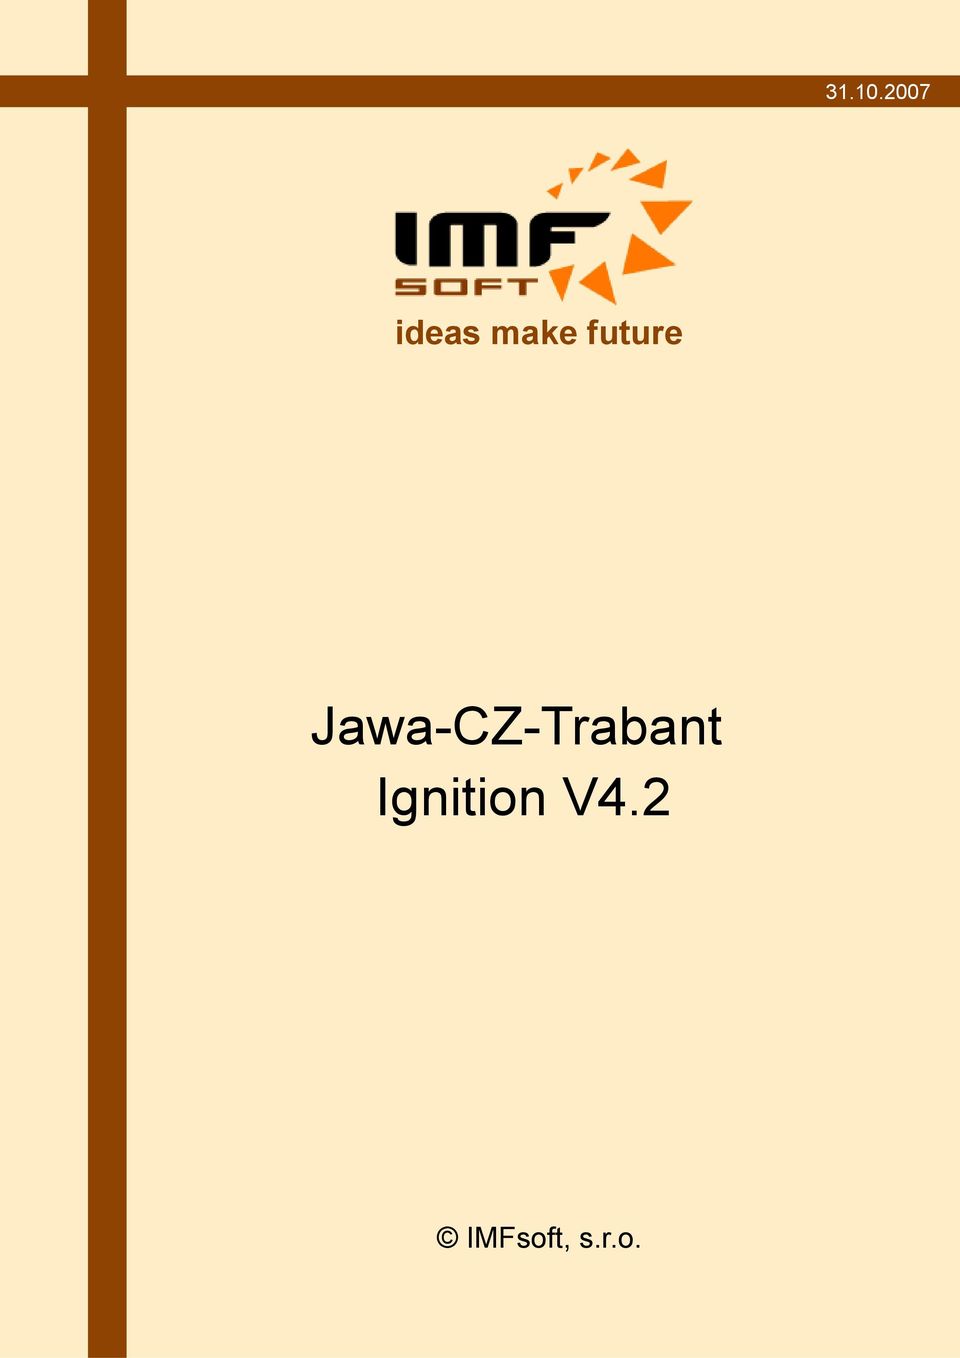 future Jawa-CZ-Trabant